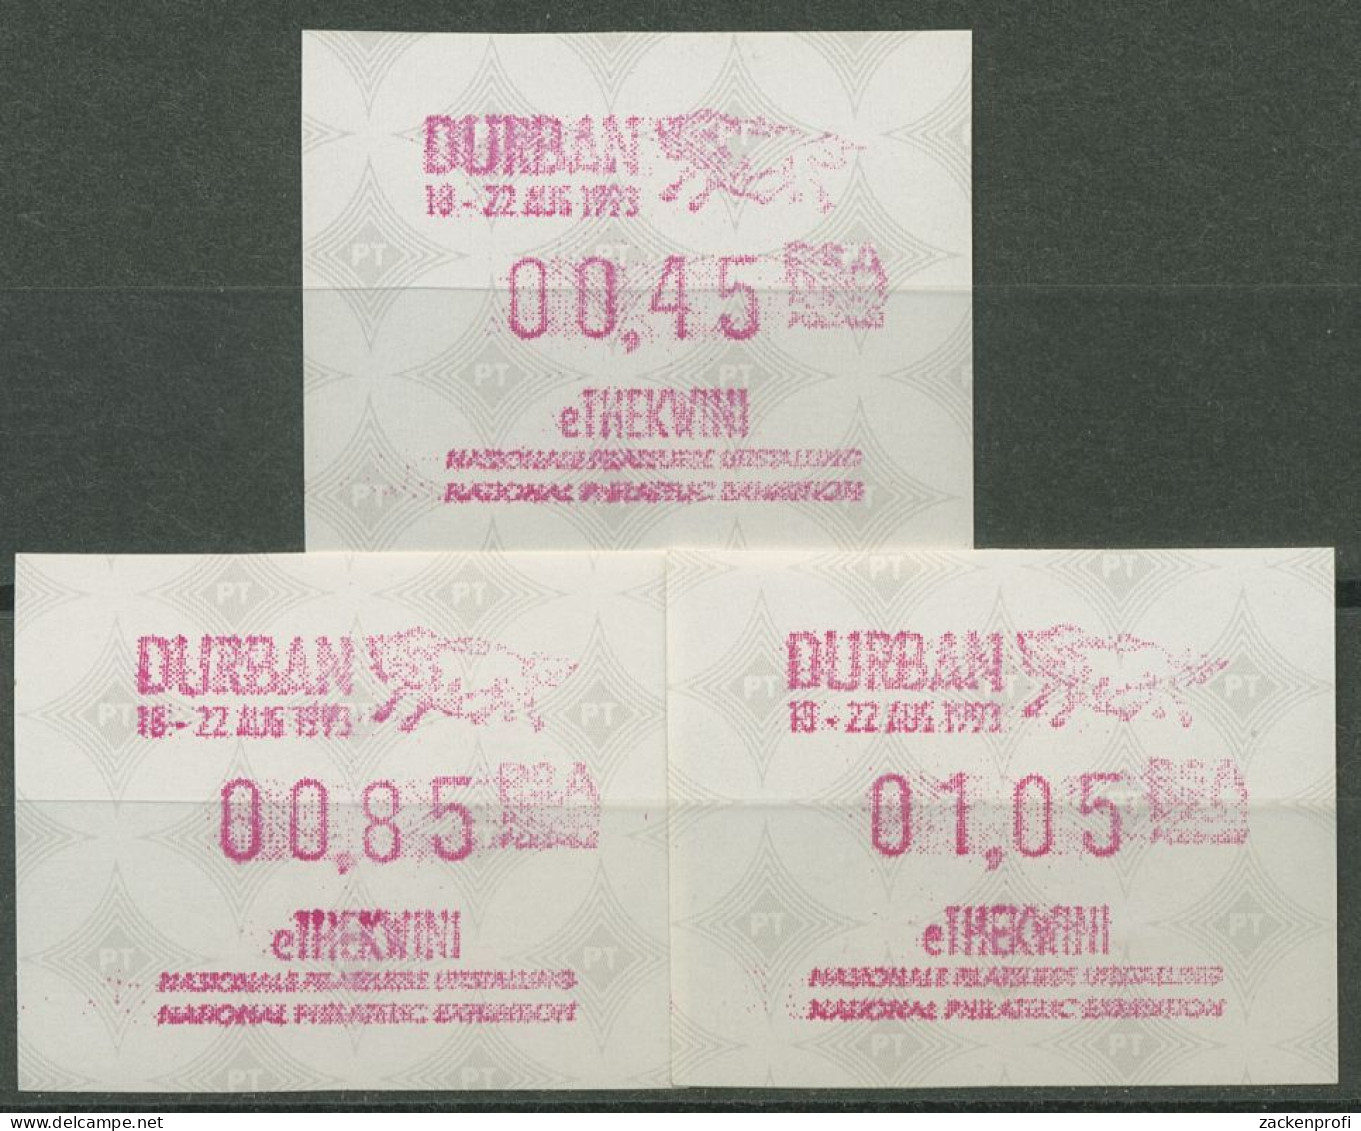 Südafrika ATM 1993 Austellung DURBAN, Satz 3 Werte ATM 12.2 S1 Postfrisch - Frankeervignetten (Frama)